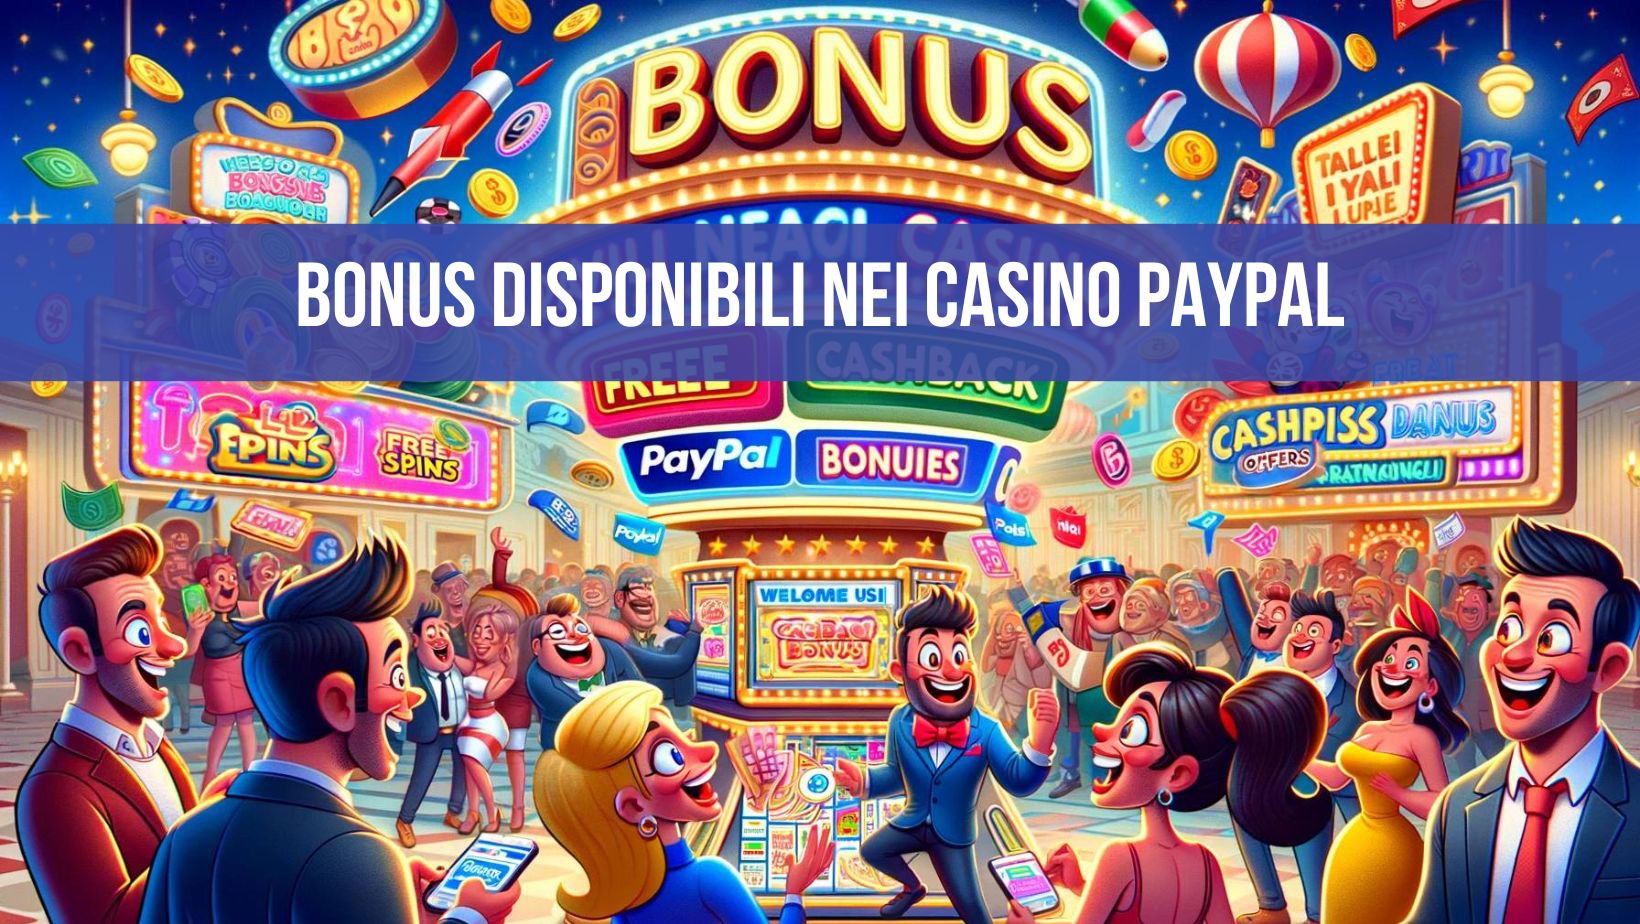 Bonus disponibili nei Casino PayPal